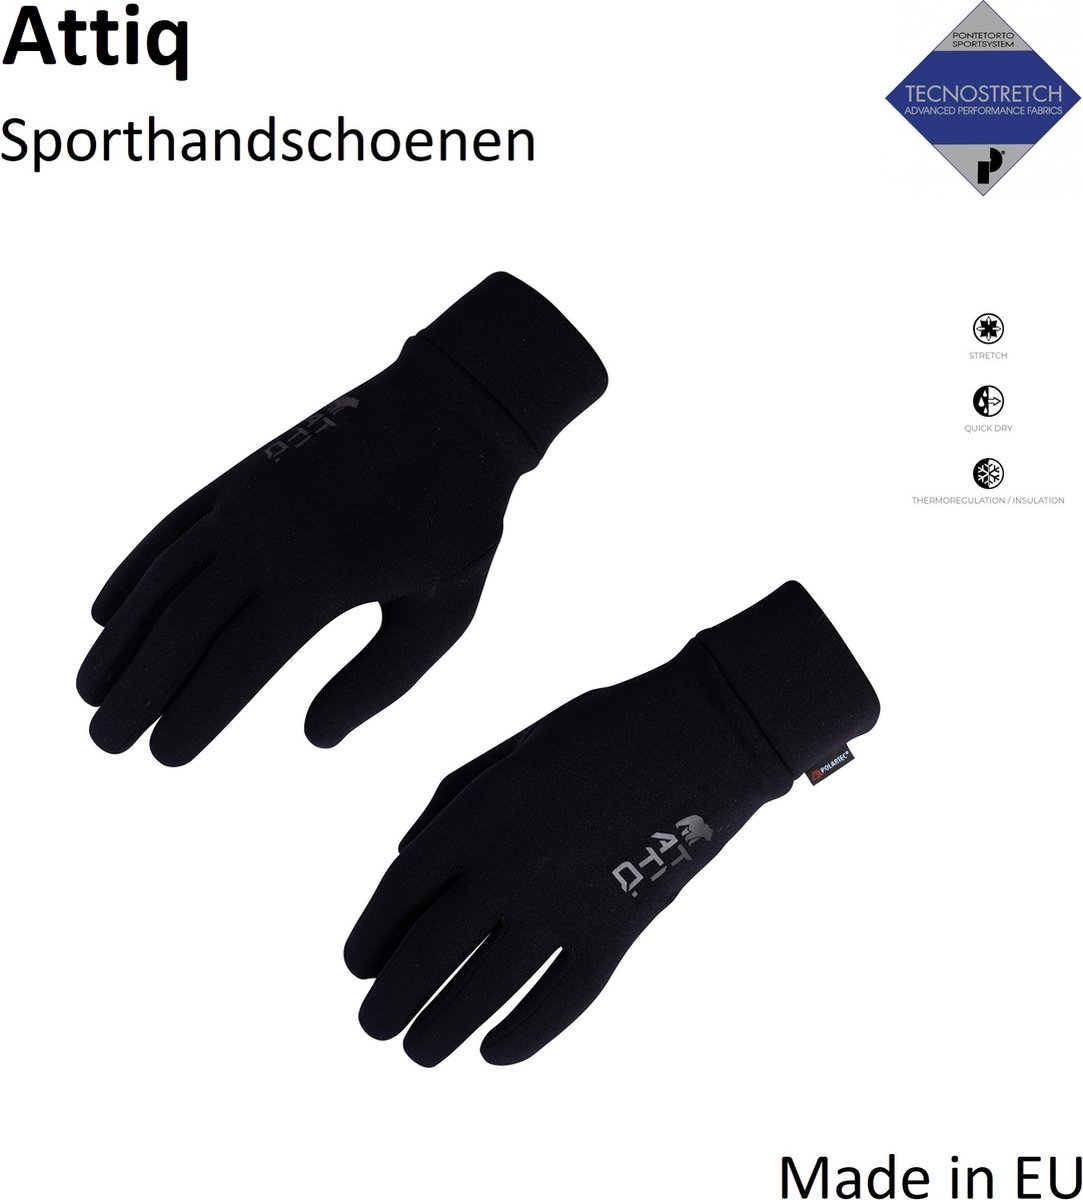 Attiq Handschoenen Thermo Sport - Lichtgewicht Isolerend Power Stretch Polartec - Zwart S